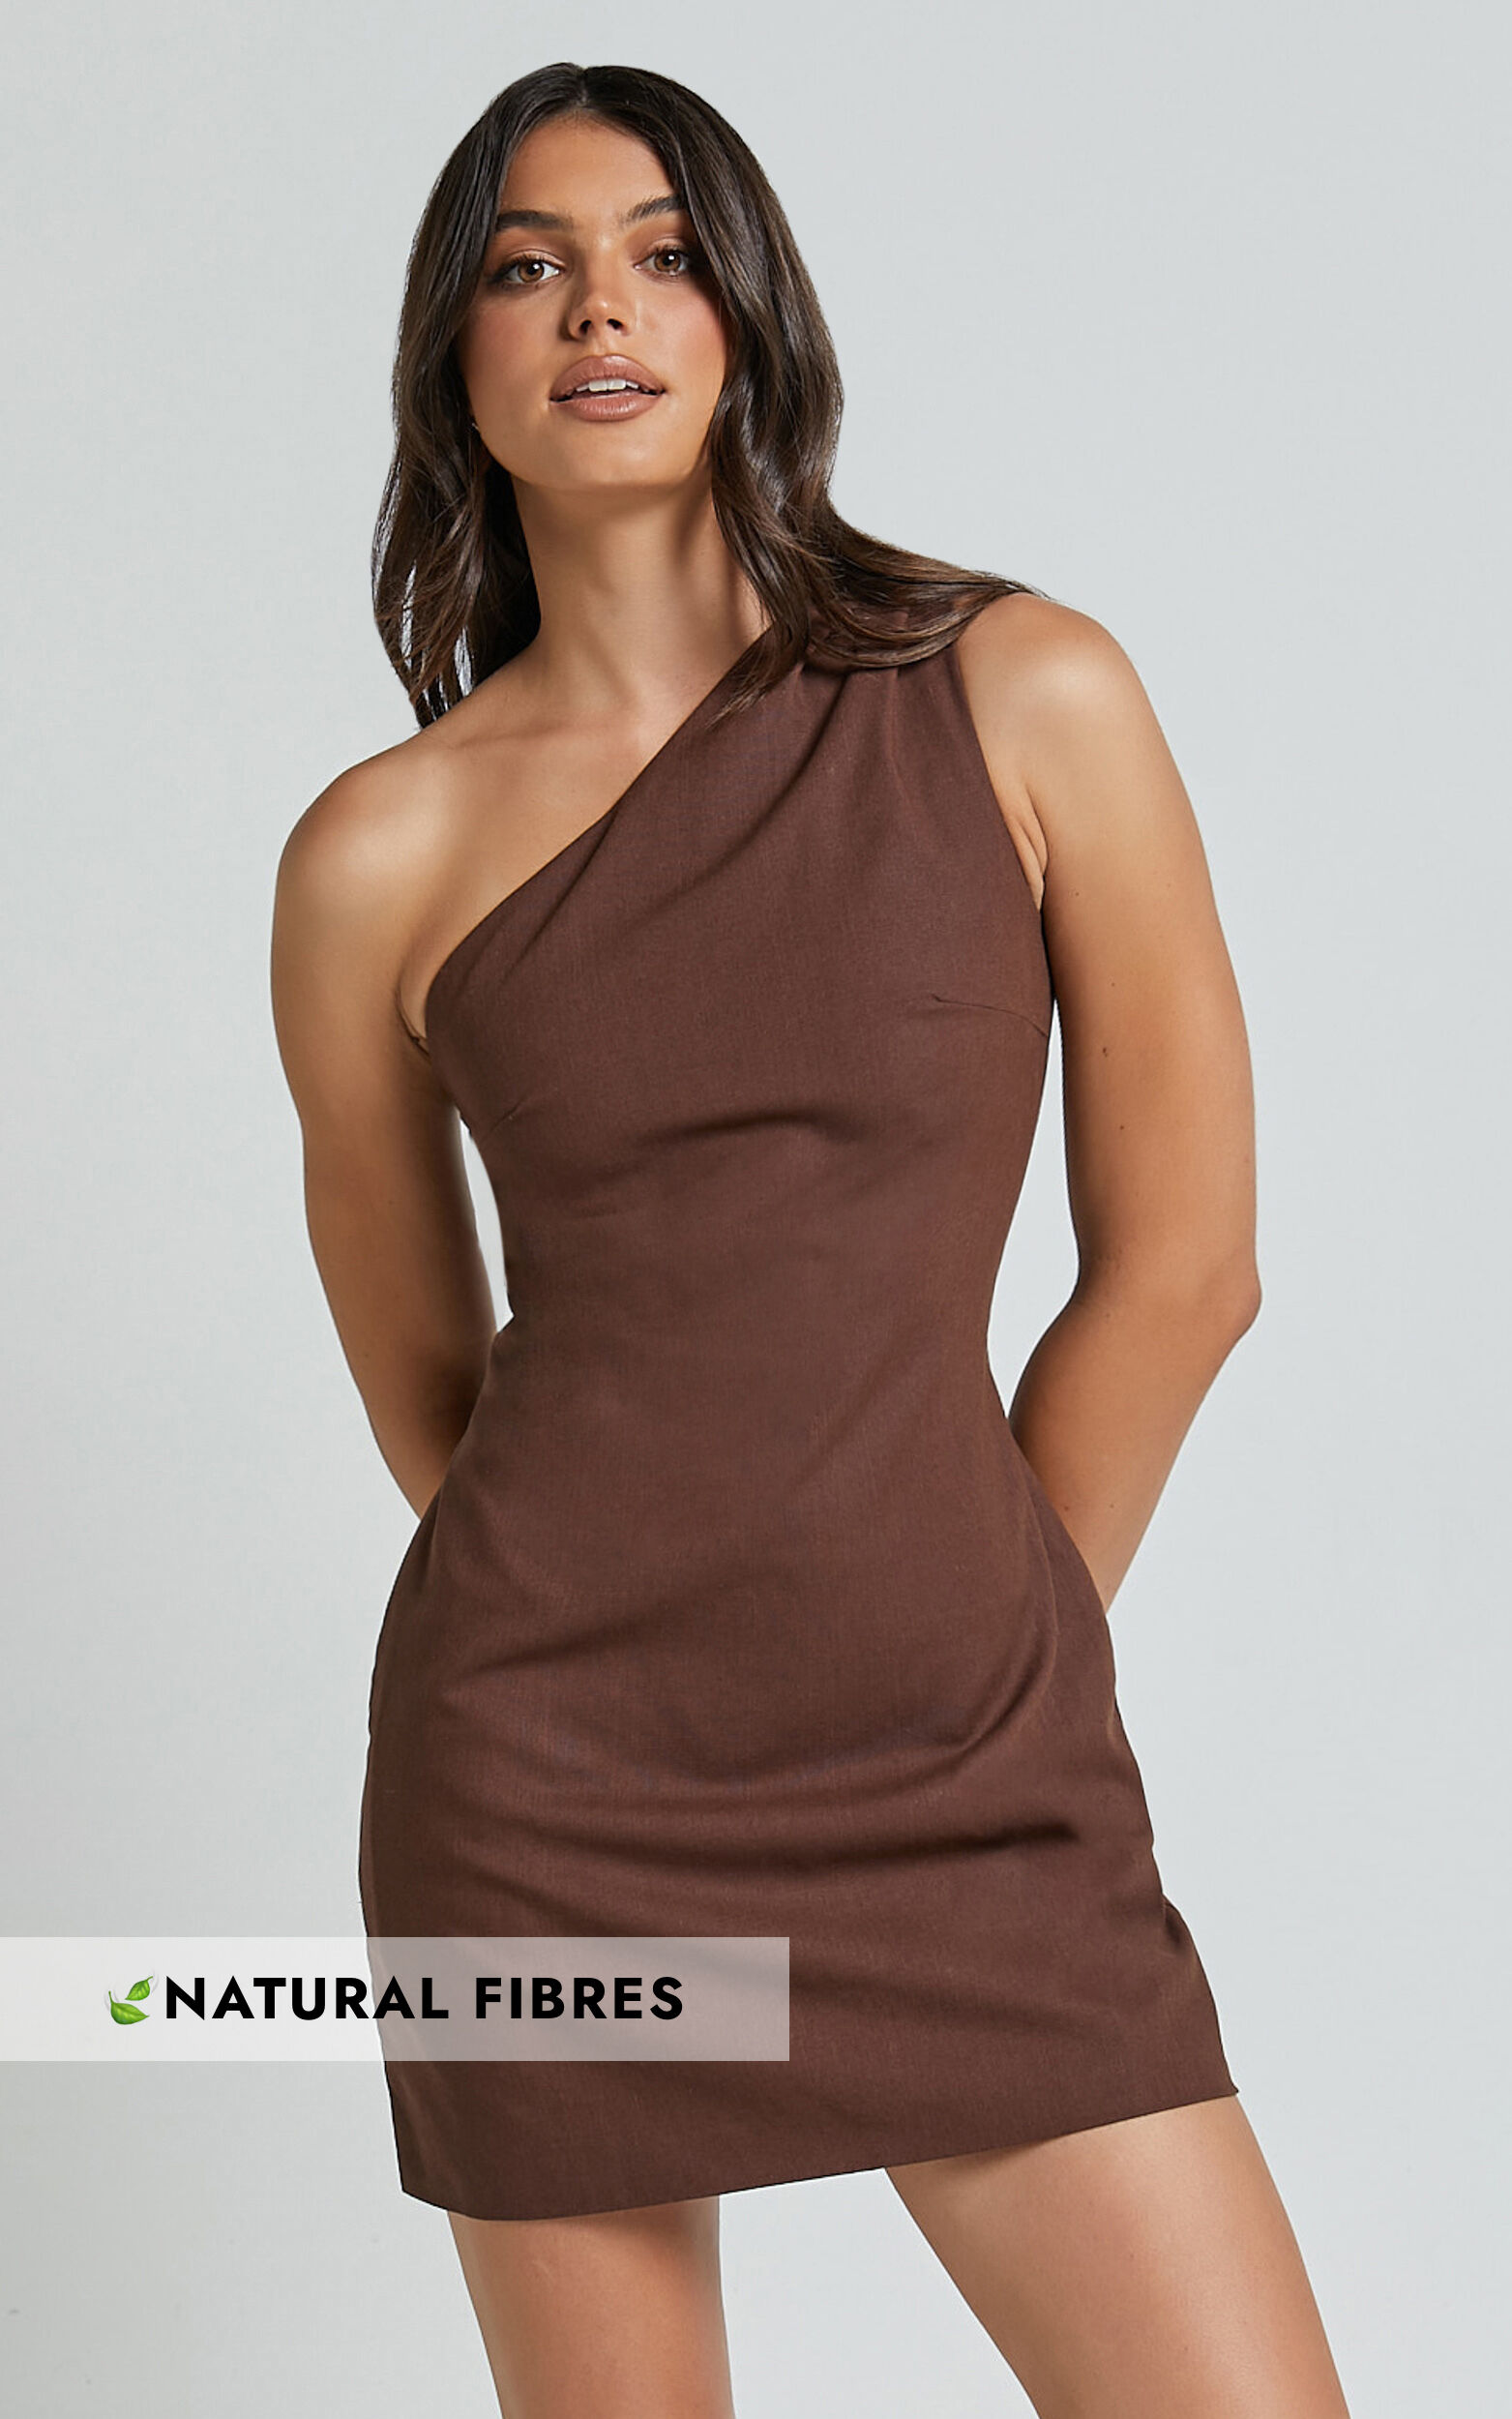 Mardelle Mini Dress - Linen Look Asymmetric One Shoulder Dress in Chocolate - 06, BRN1